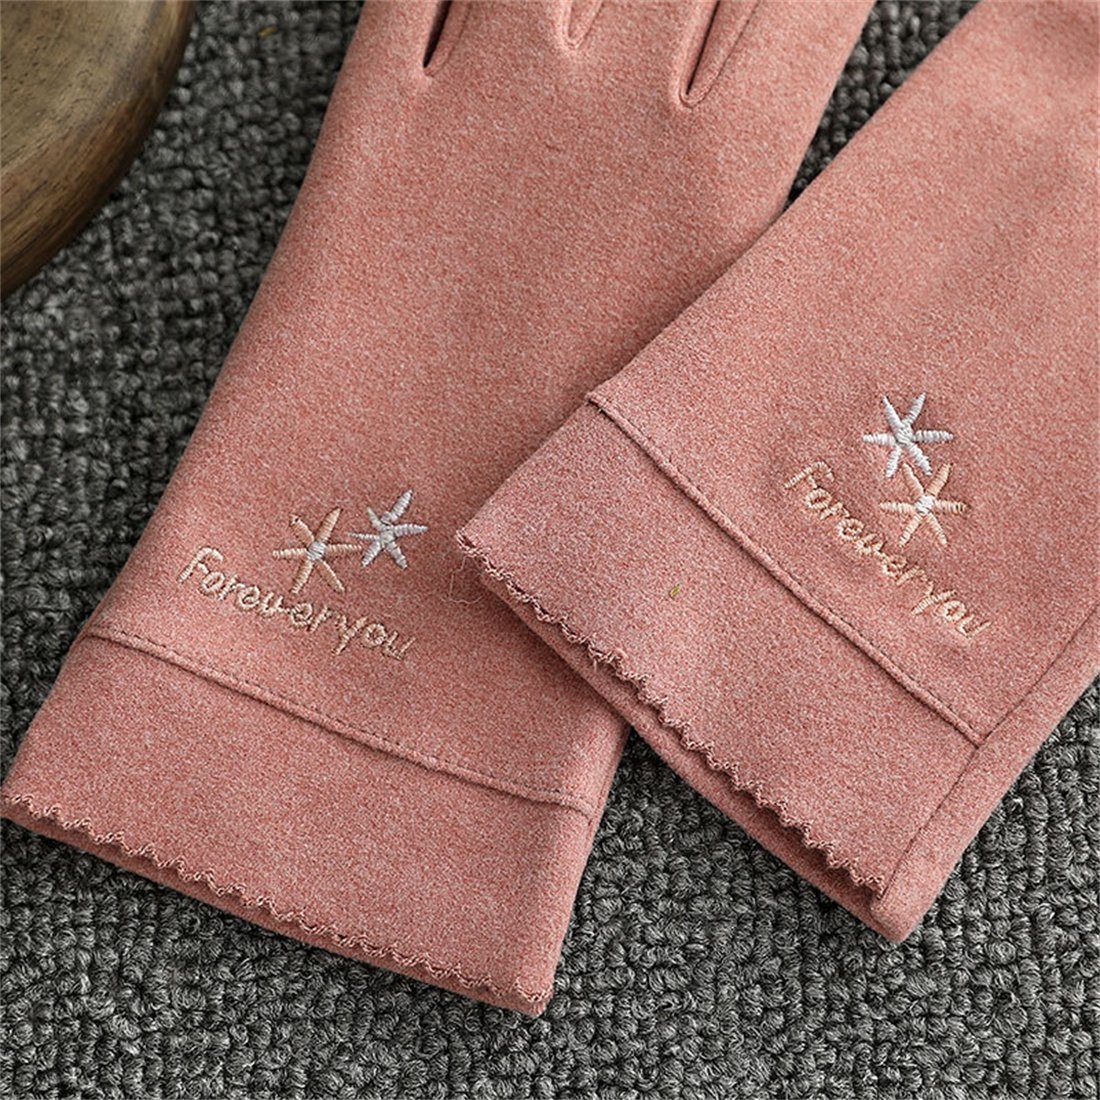 DÖRÖY Fleecehandschuhe Handschuhe Touchscreen Damenmode Schwarz Reithandschuhe, Winter Warme